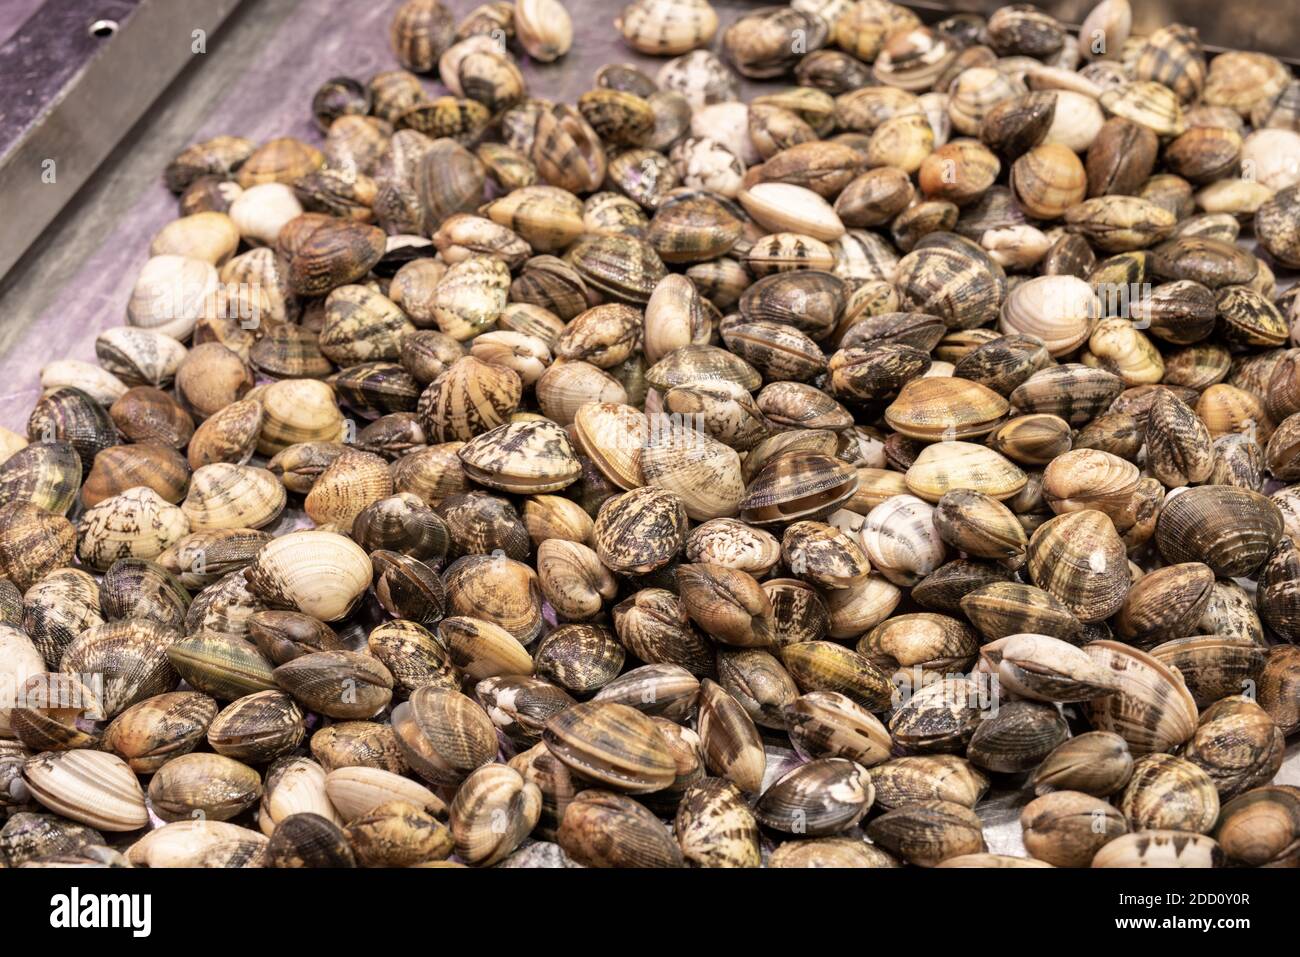 Meeresfrüchte Muscheln Schalentiere auf dem Fischmarkt Stockfoto